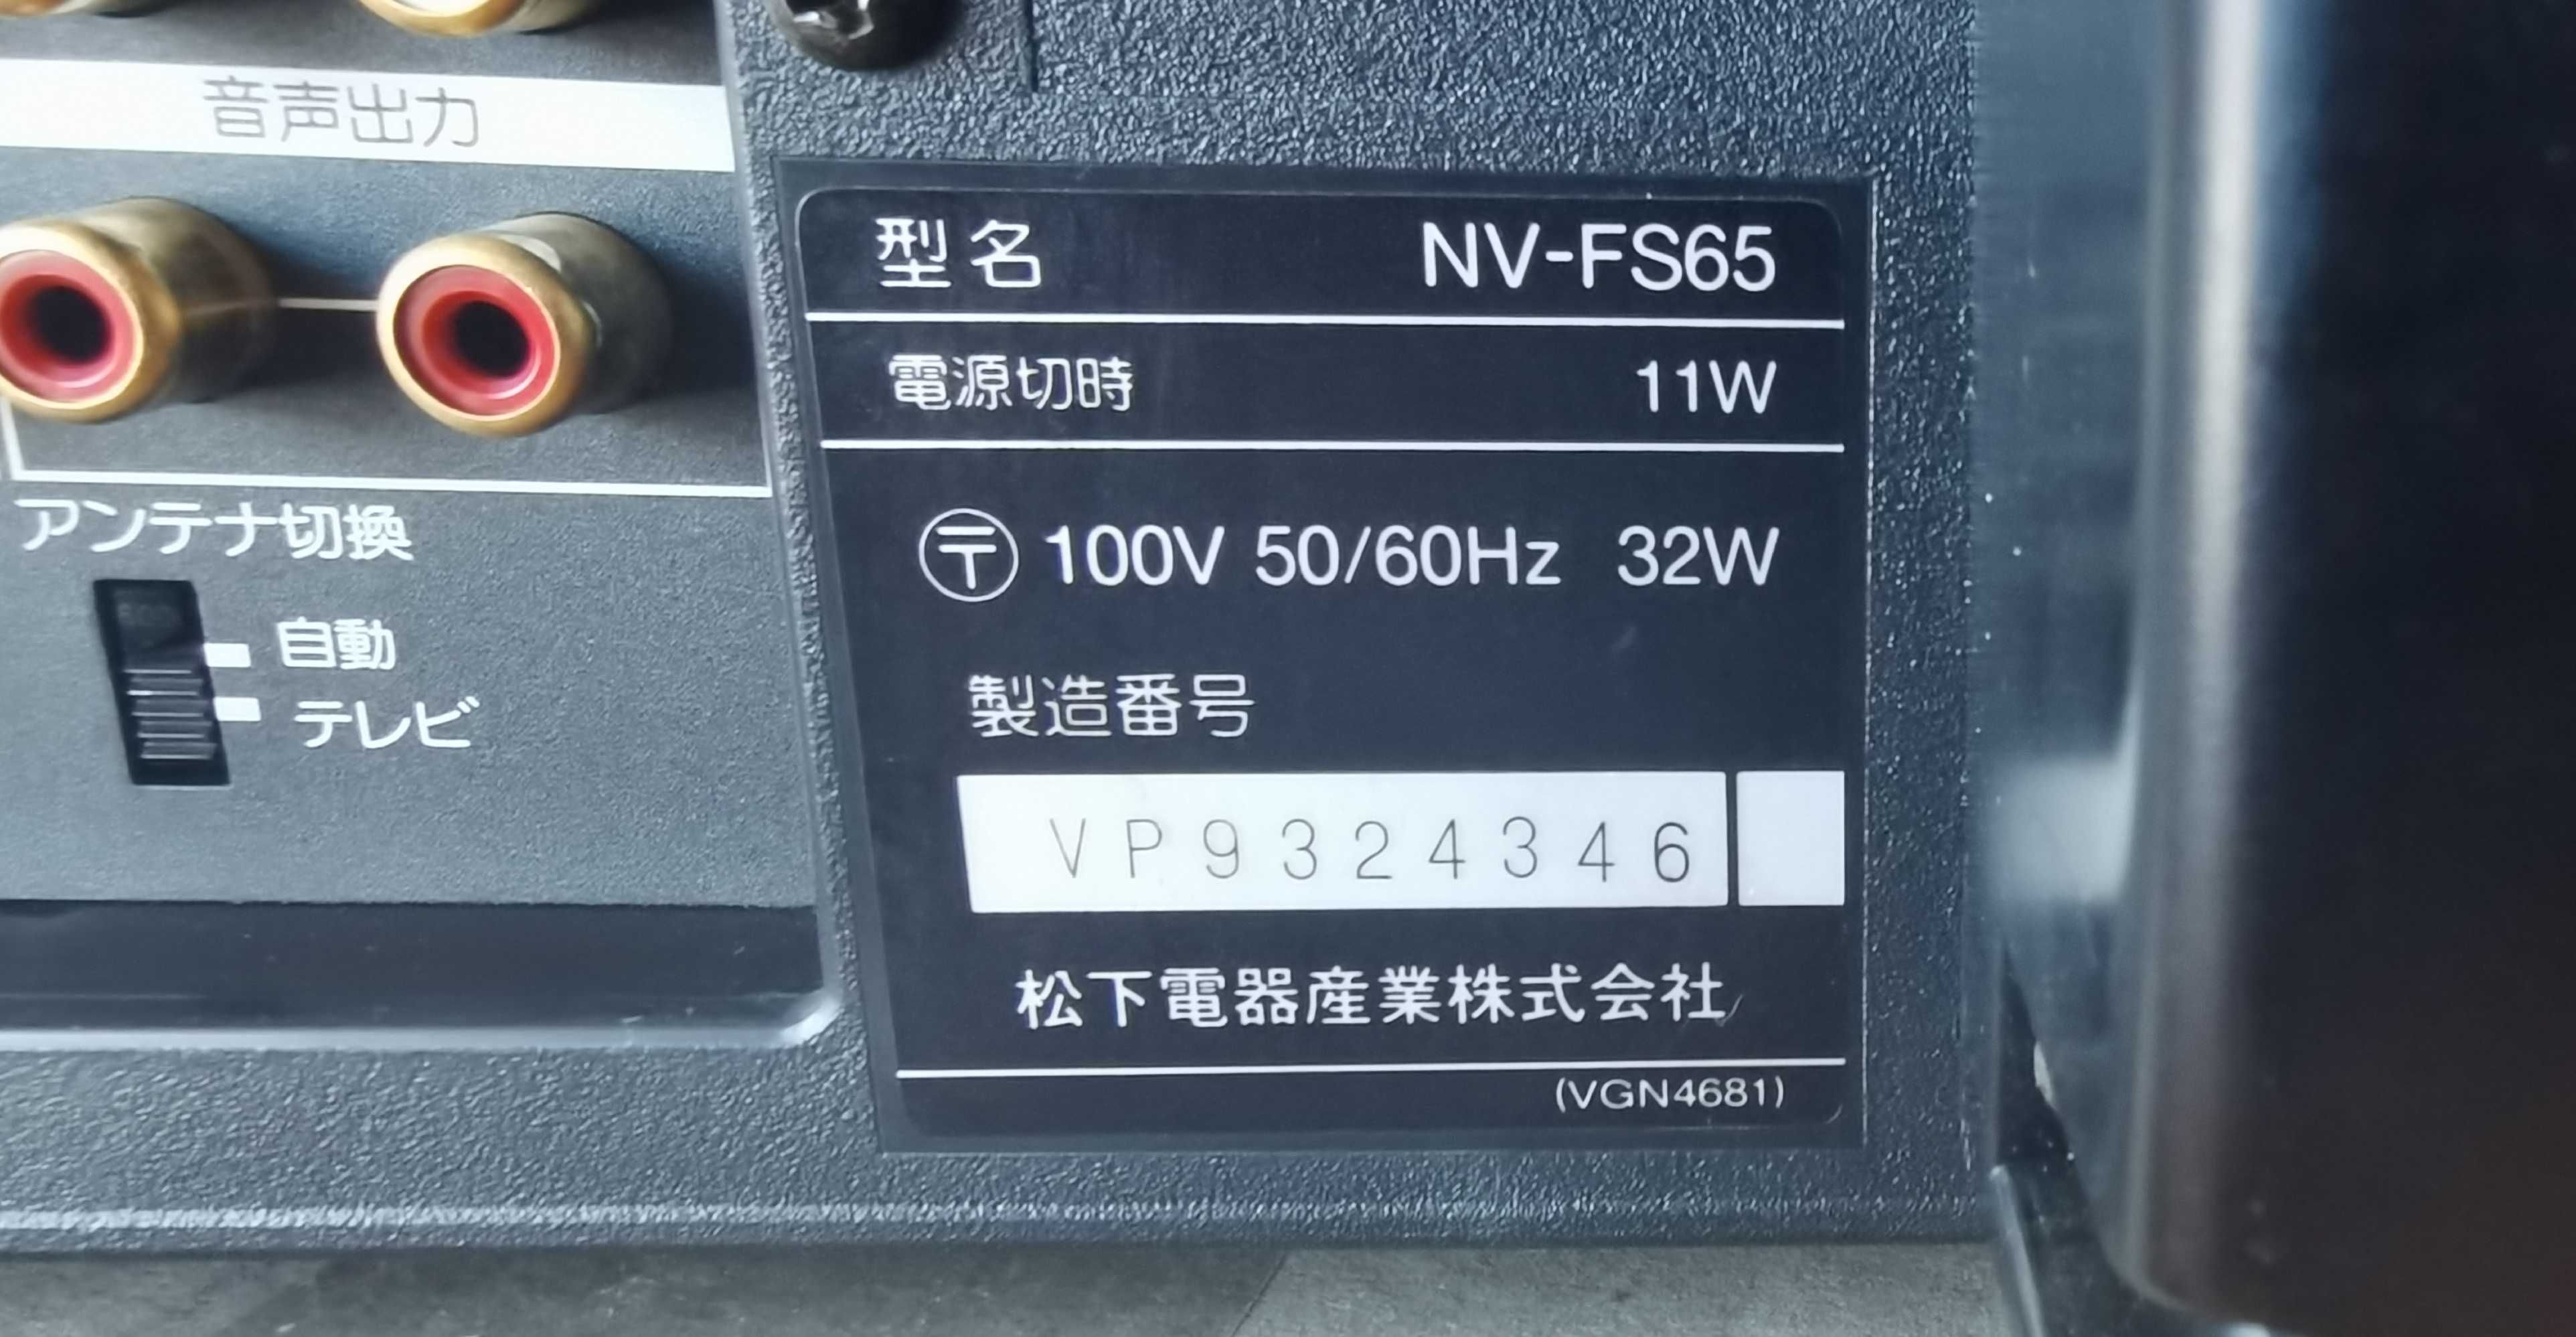 Видеомагнитофон Panasonic NV-FS65 7 head Hi-Fi st ("Мечта аудиофила")